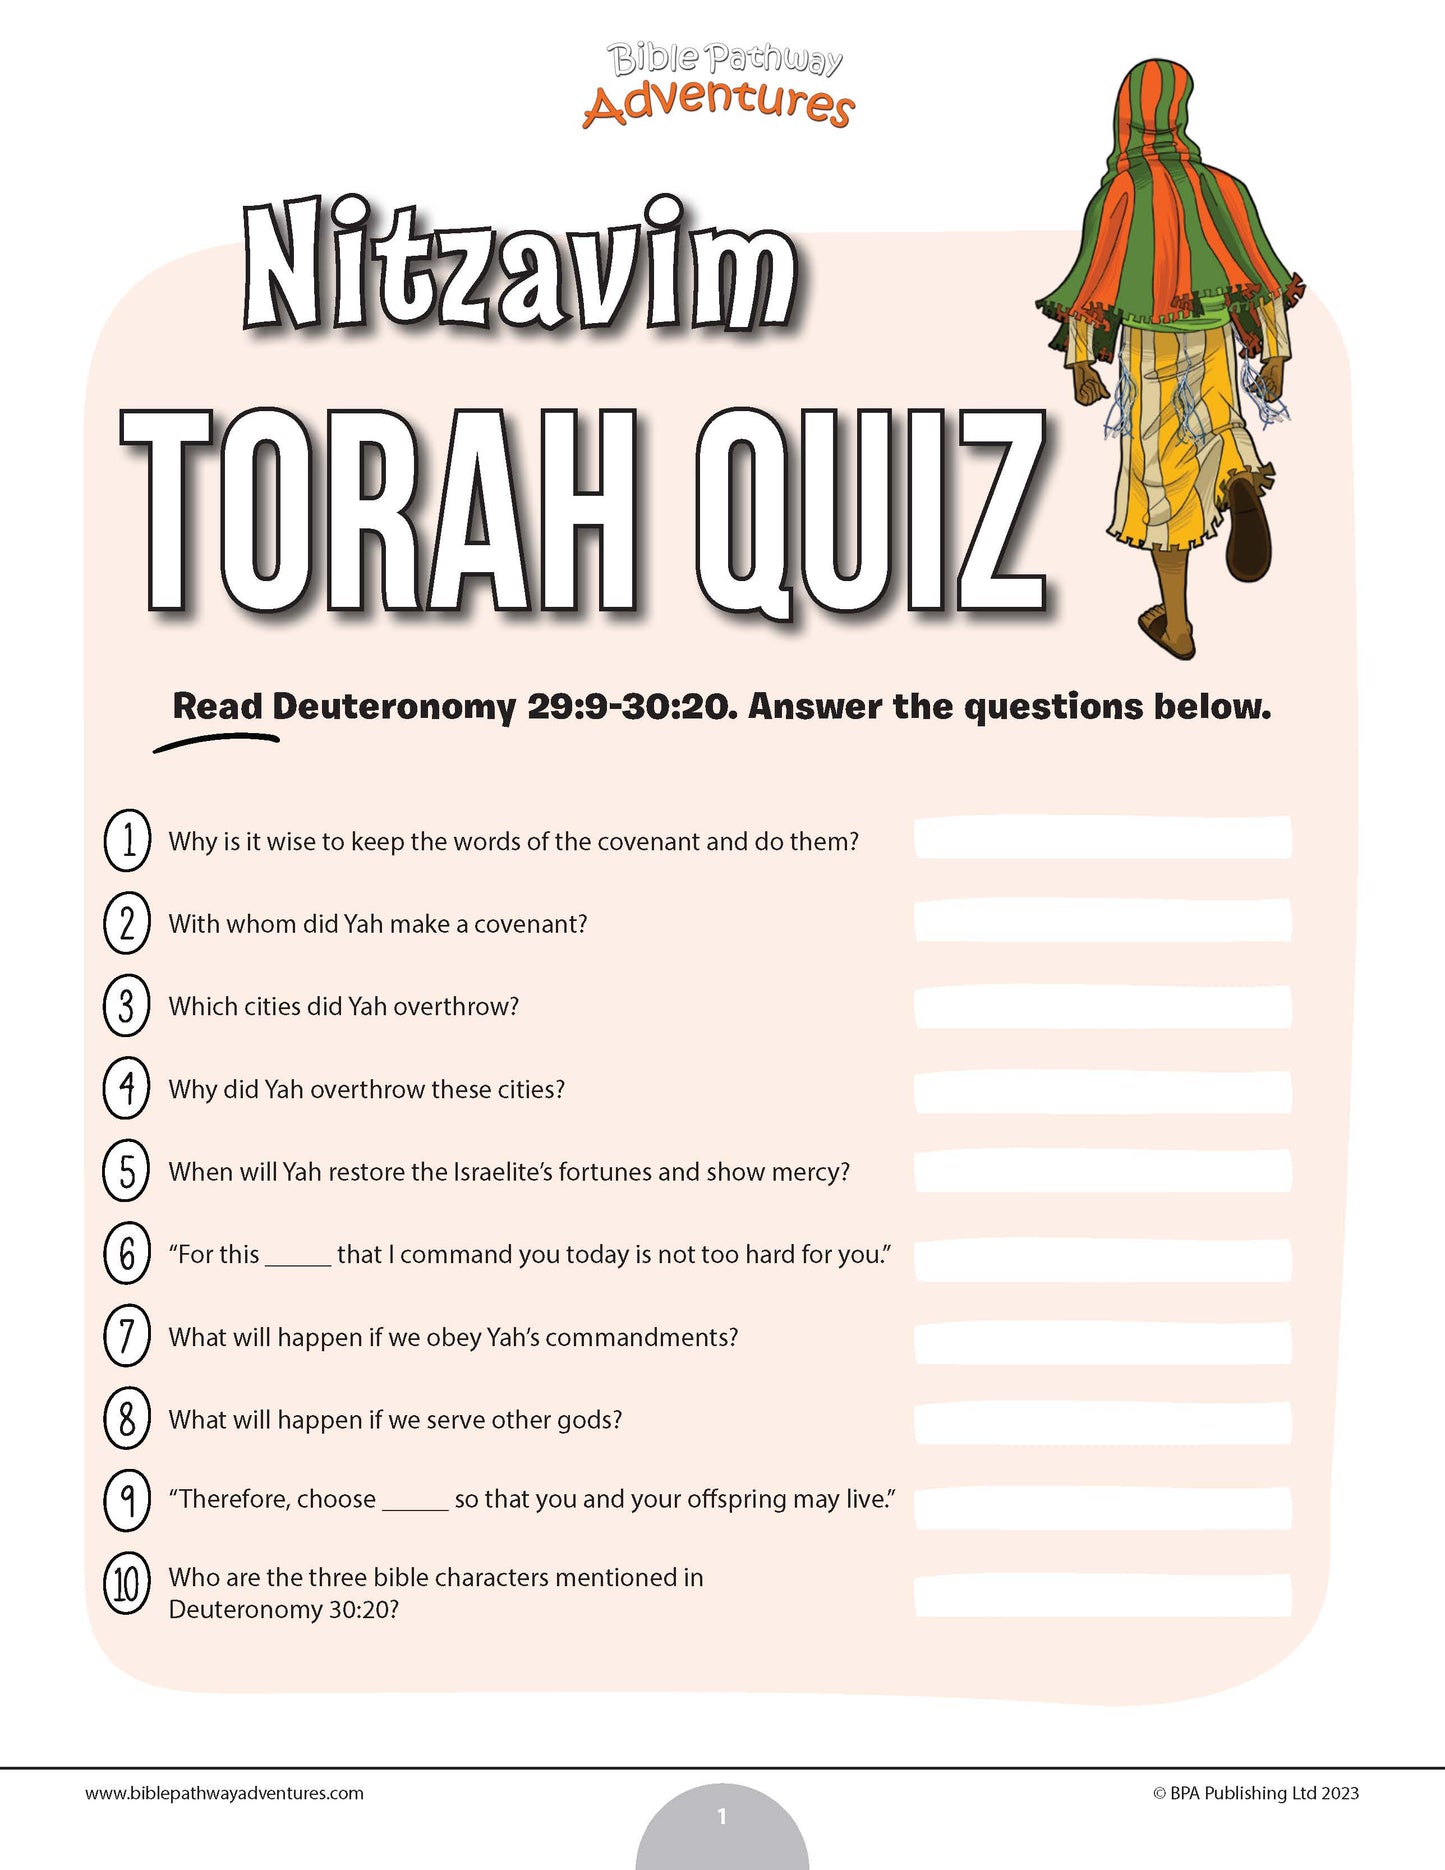 Nitzavim Torah quiz